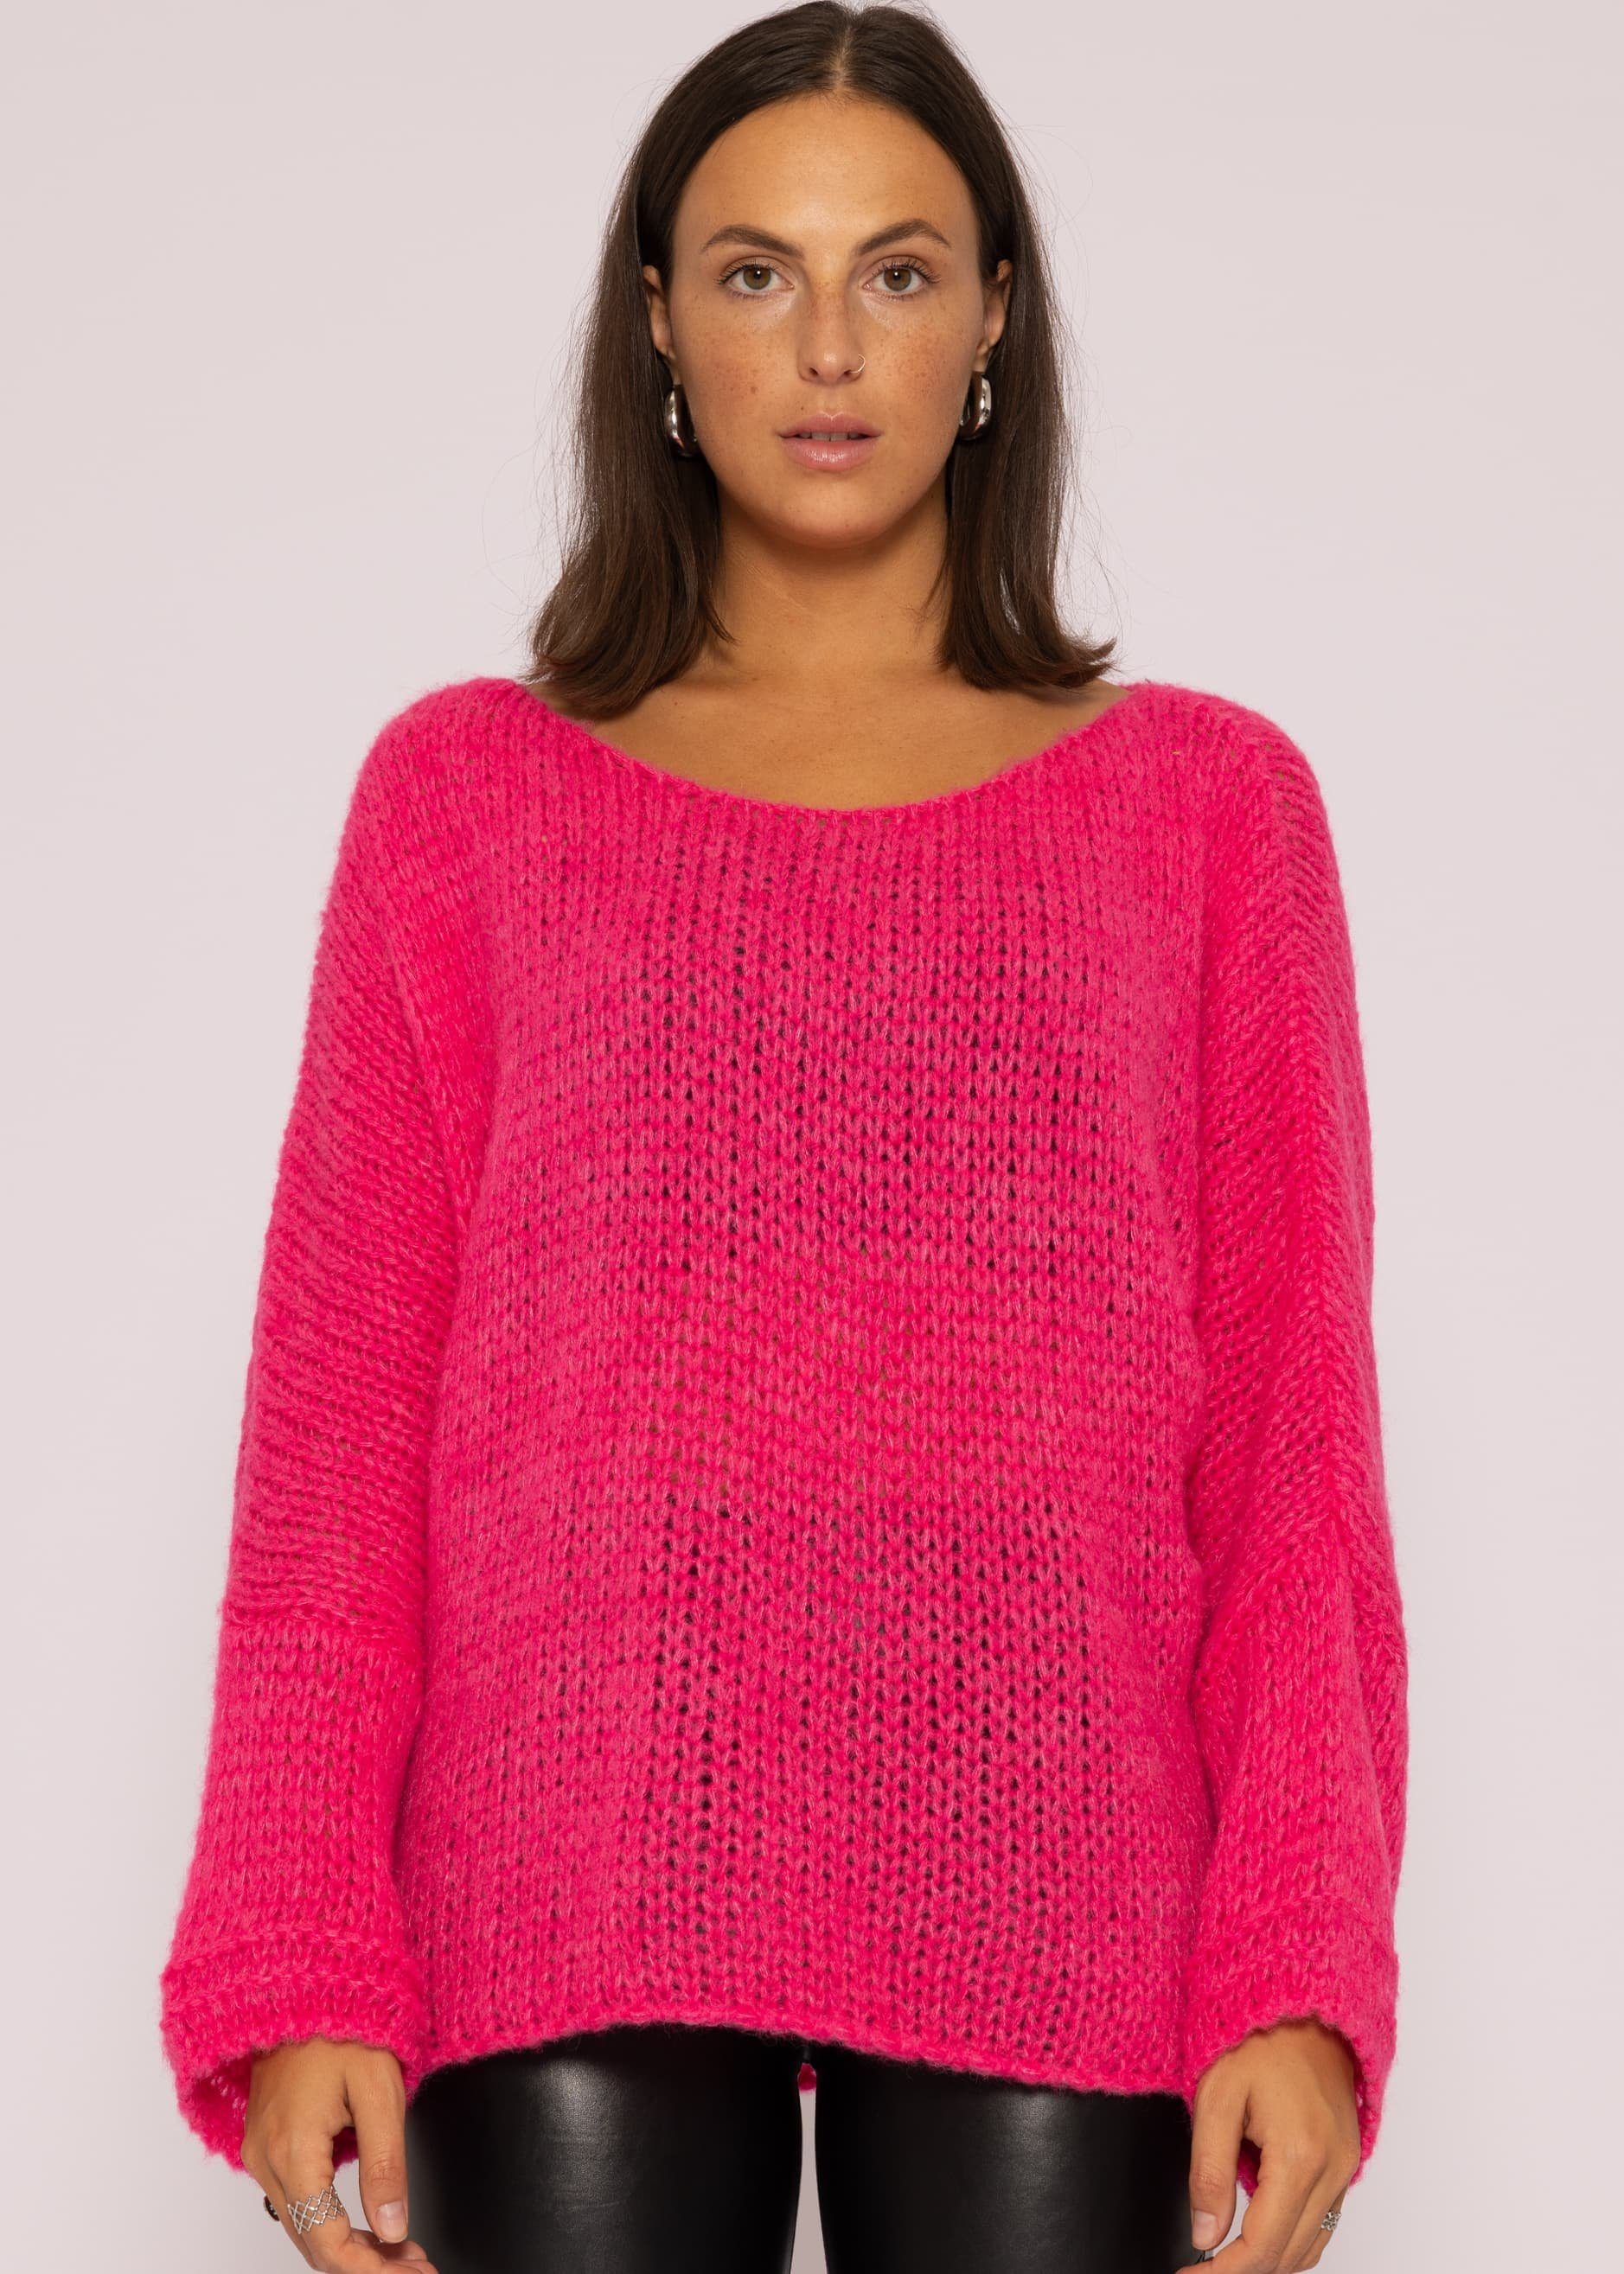 Oversize Made aus Damen Lässiger Pink in lang Italy Rundhals-Ausschnitt, Grobstrick mit Strickpullover Strickpullover Pullover weichem SASSYCLASSY